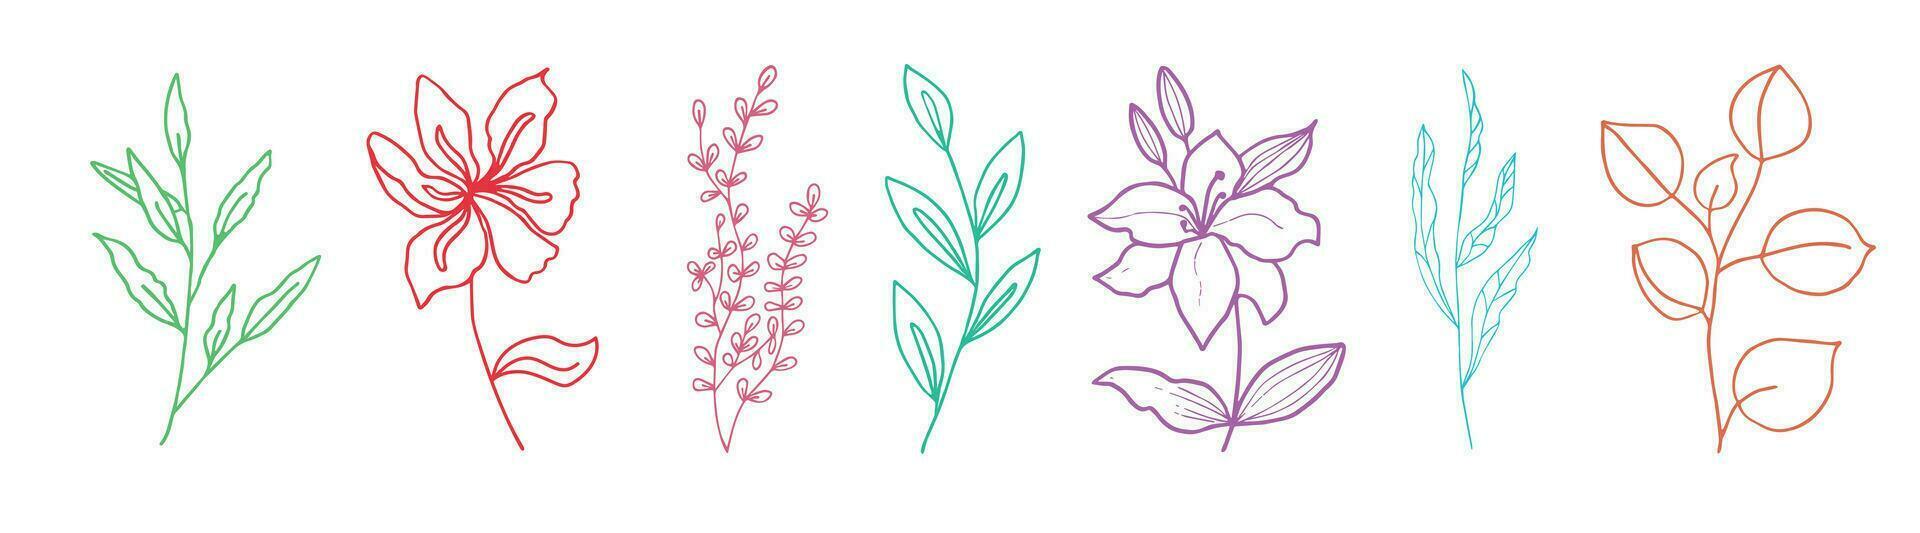 fiori e ramoscelli disegnato di mano. elementi per il design di cartoline. vettore